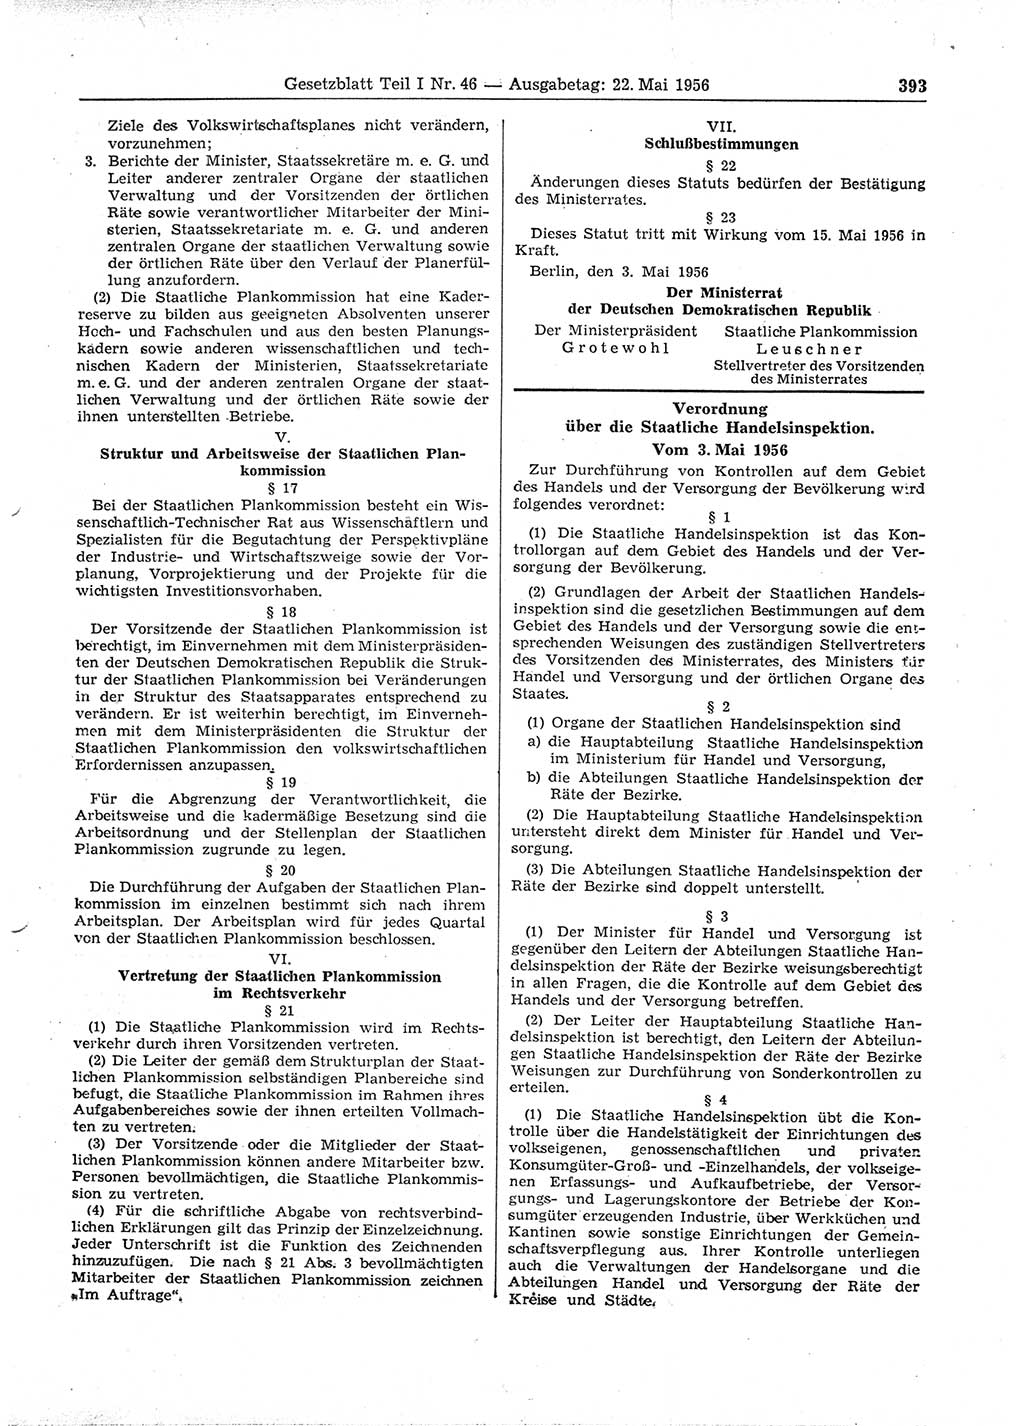 Gesetzblatt (GBl.) der Deutschen Demokratischen Republik (DDR) Teil Ⅰ 1956, Seite 393 (GBl. DDR Ⅰ 1956, S. 393)